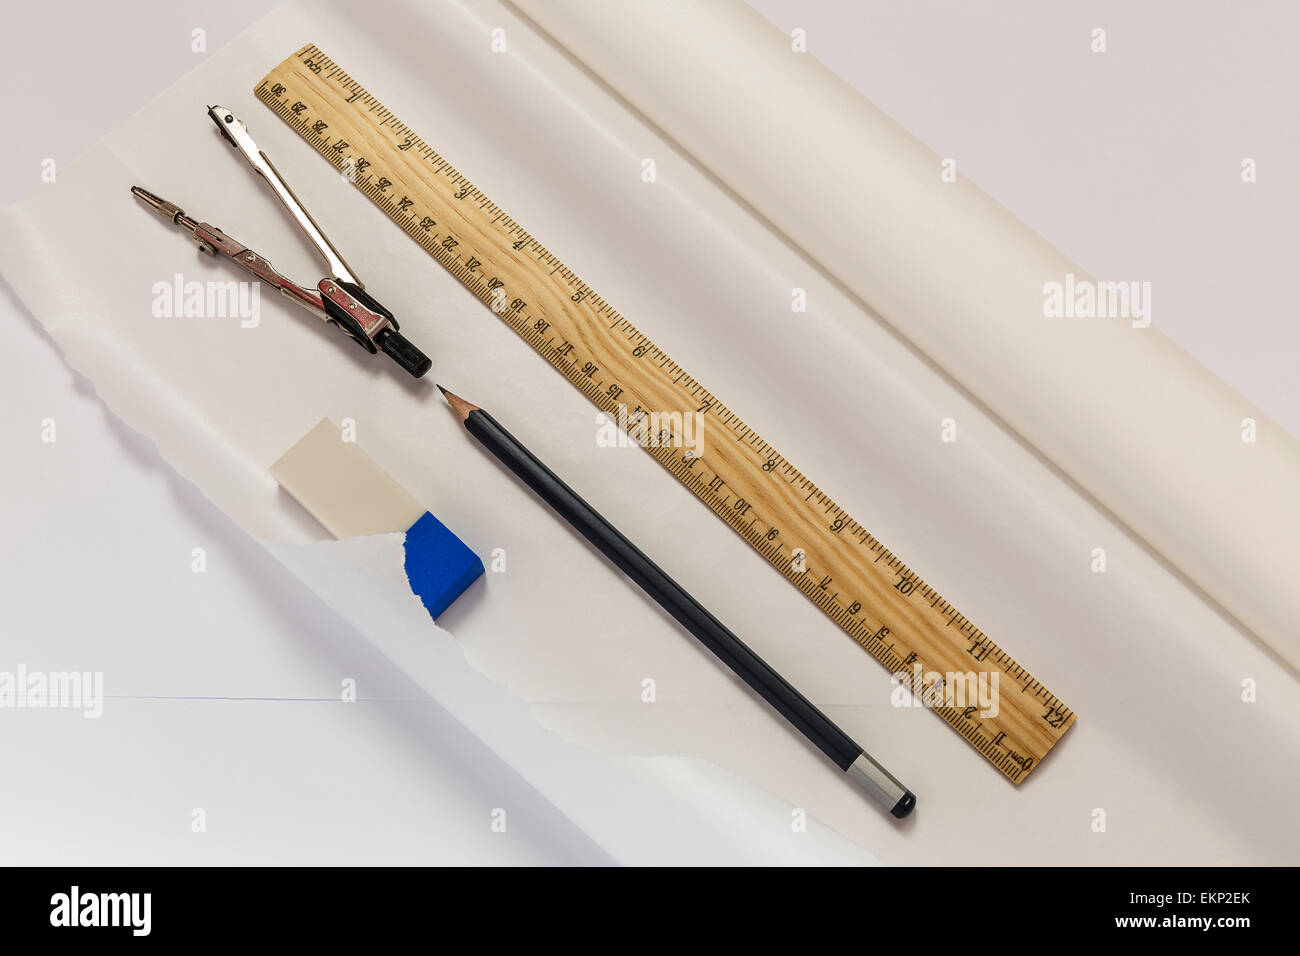 Règle, compas, crayon, gomme et rouleau de papier calque Banque D'Images